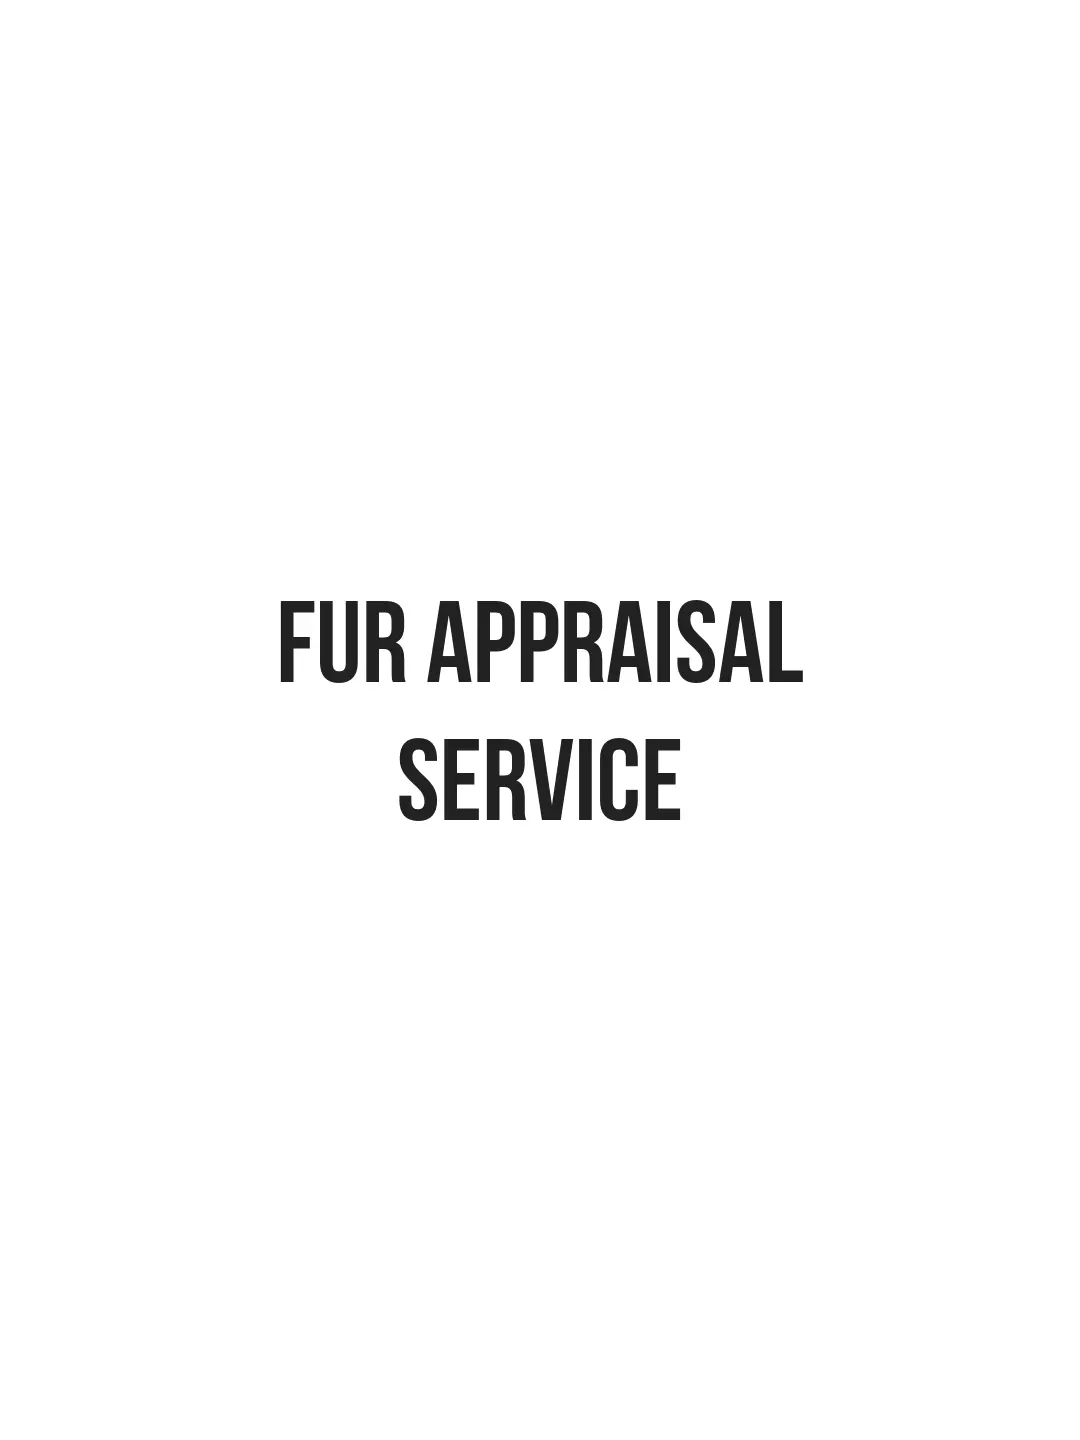 LaBelle Since 1919 Fur Appraisal Service